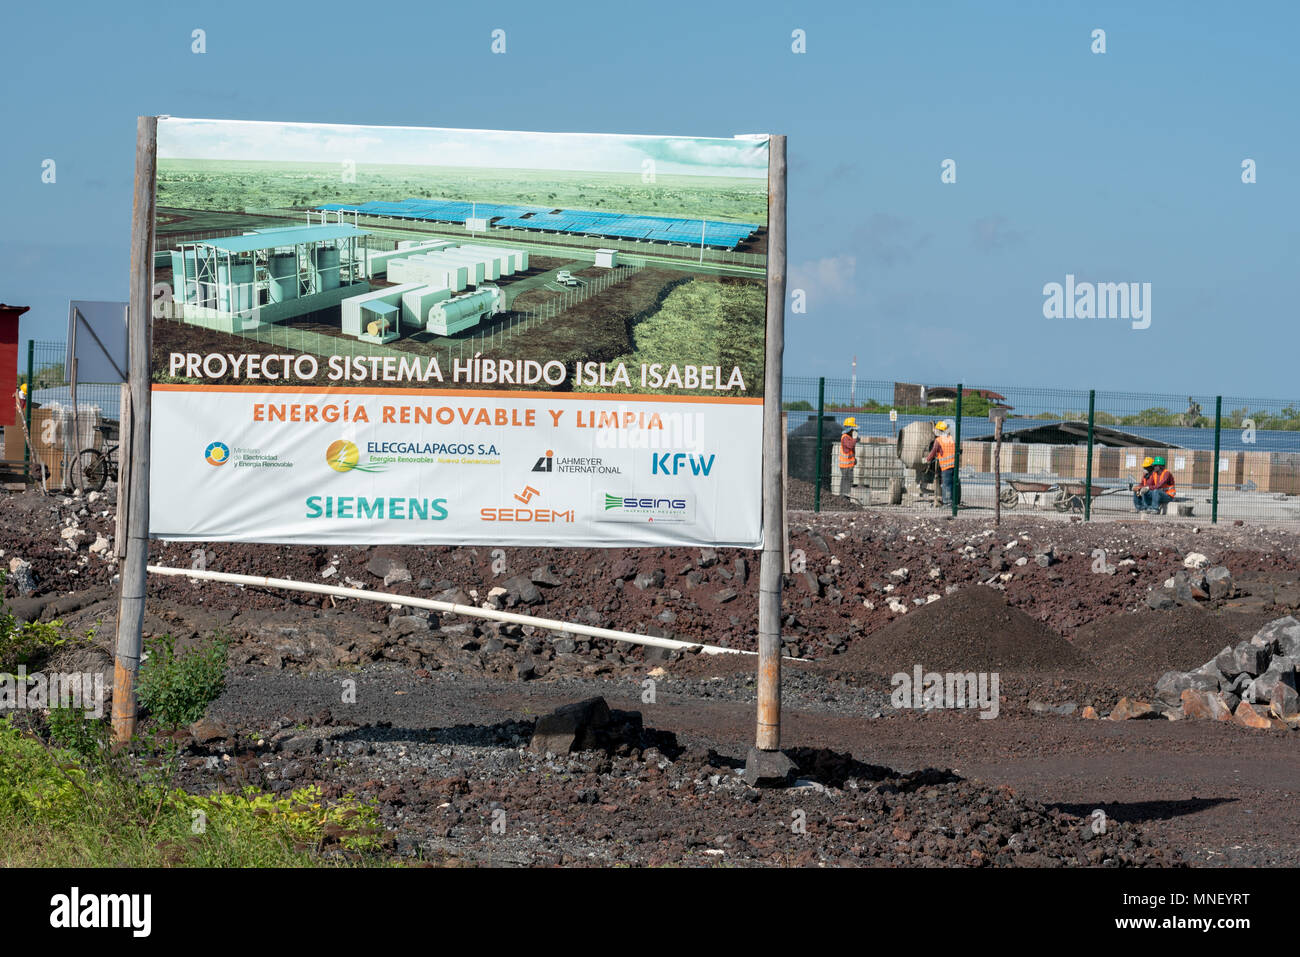 Ferme solaire, partie d'un nouveau système solaire hybride/biocarburant, en construction à Puerto Villamil, Isabela Island, îles Galapagos, en Équateur. Banque D'Images